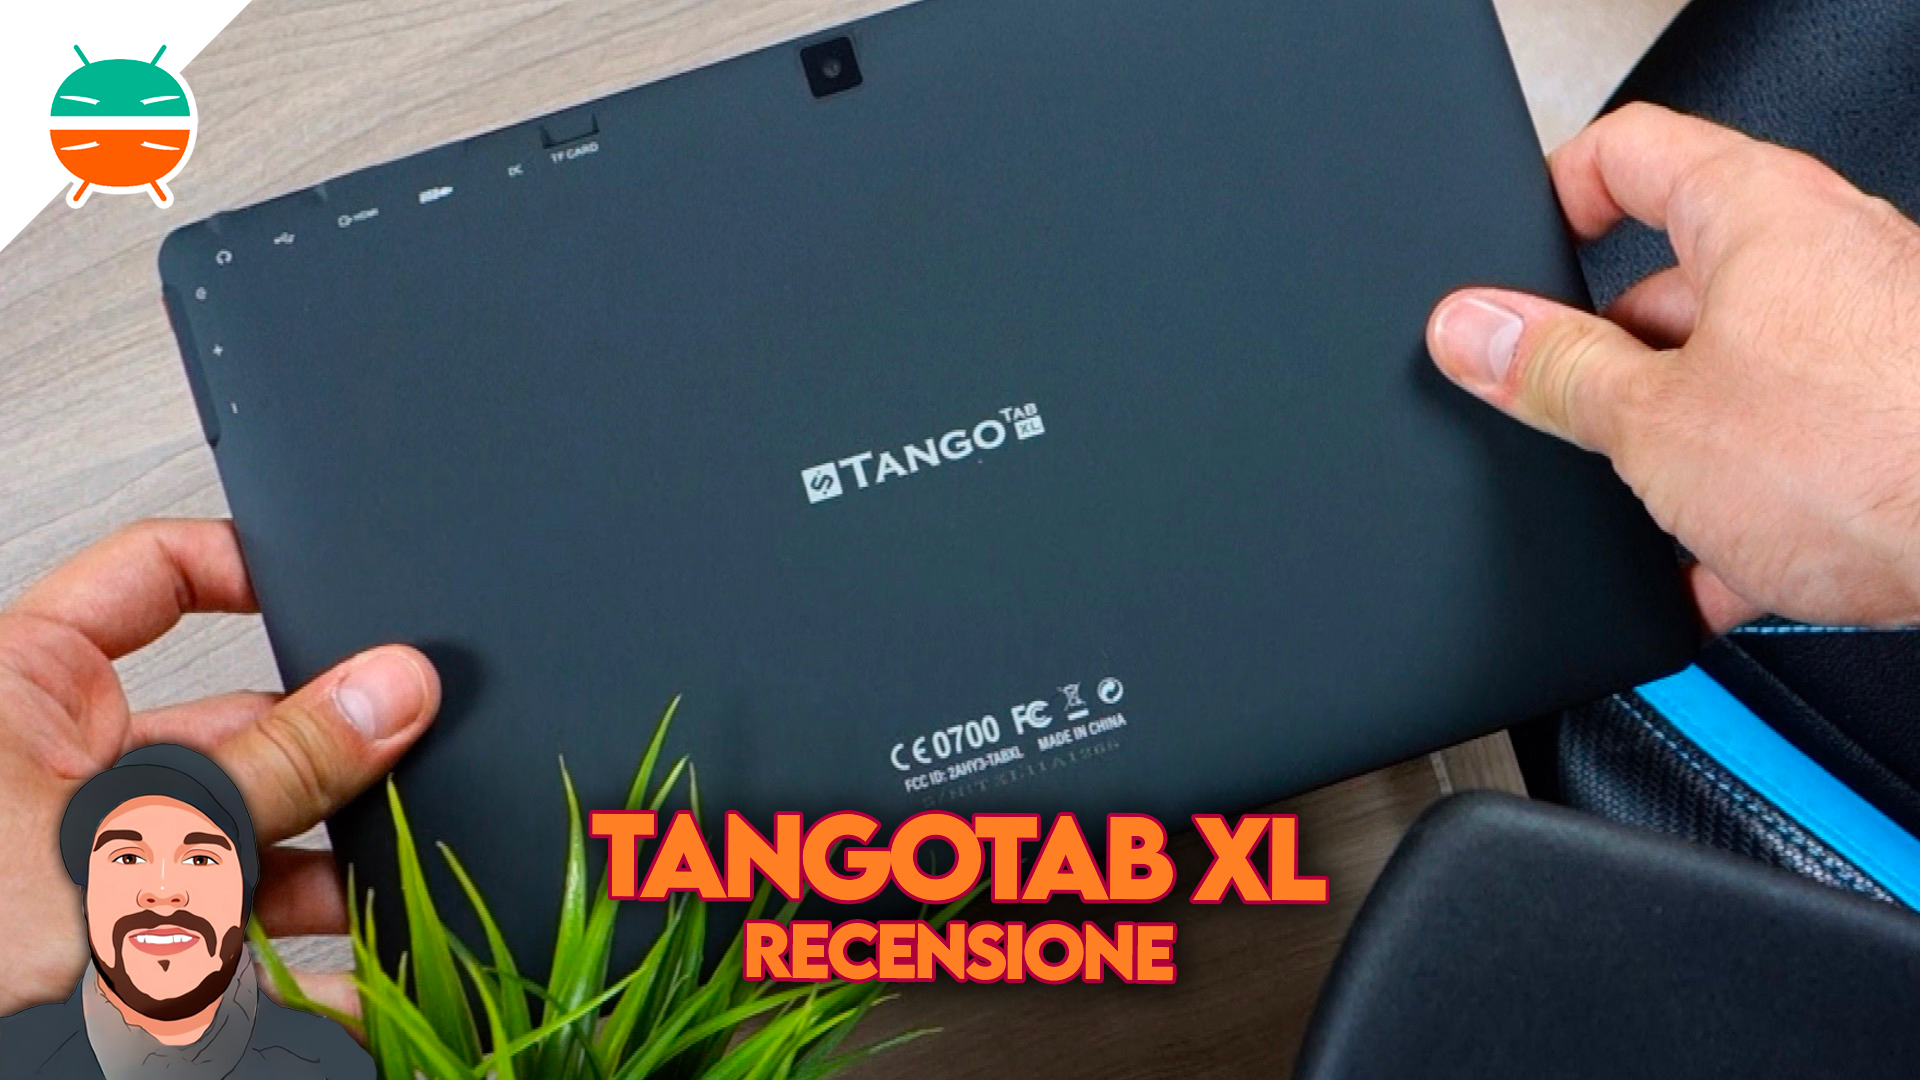 Guide de l'utilisateur de la tablette Simbans Tango Tab XL 10 pouces